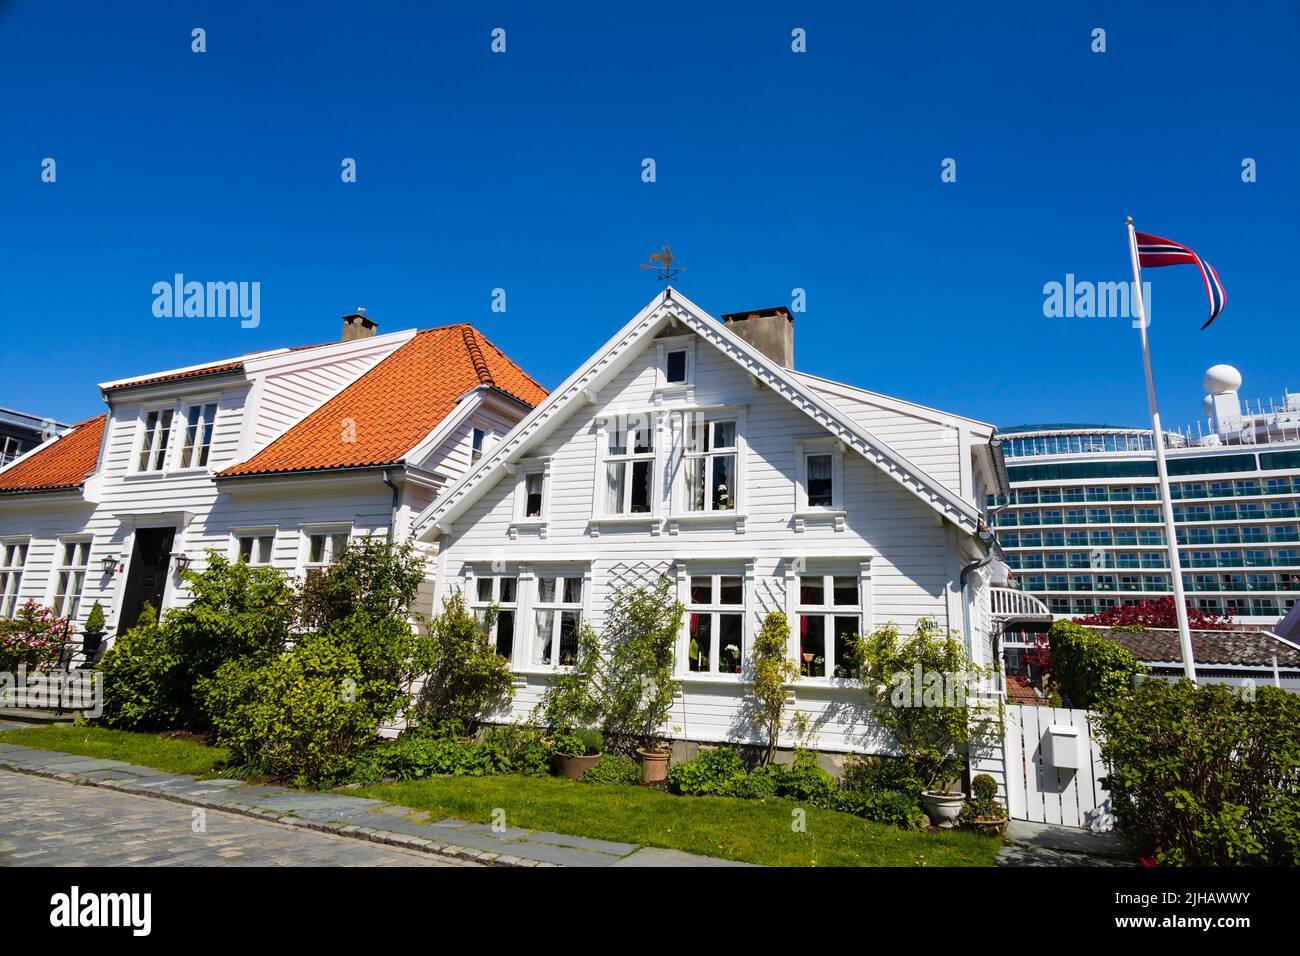 Casas tradicionales noruegas pintadas en madera blanca en Øvre Strandgate, Stavanger, Noruega. El crucero de P&O, MS Iona, está en el fondo. Foto de stock